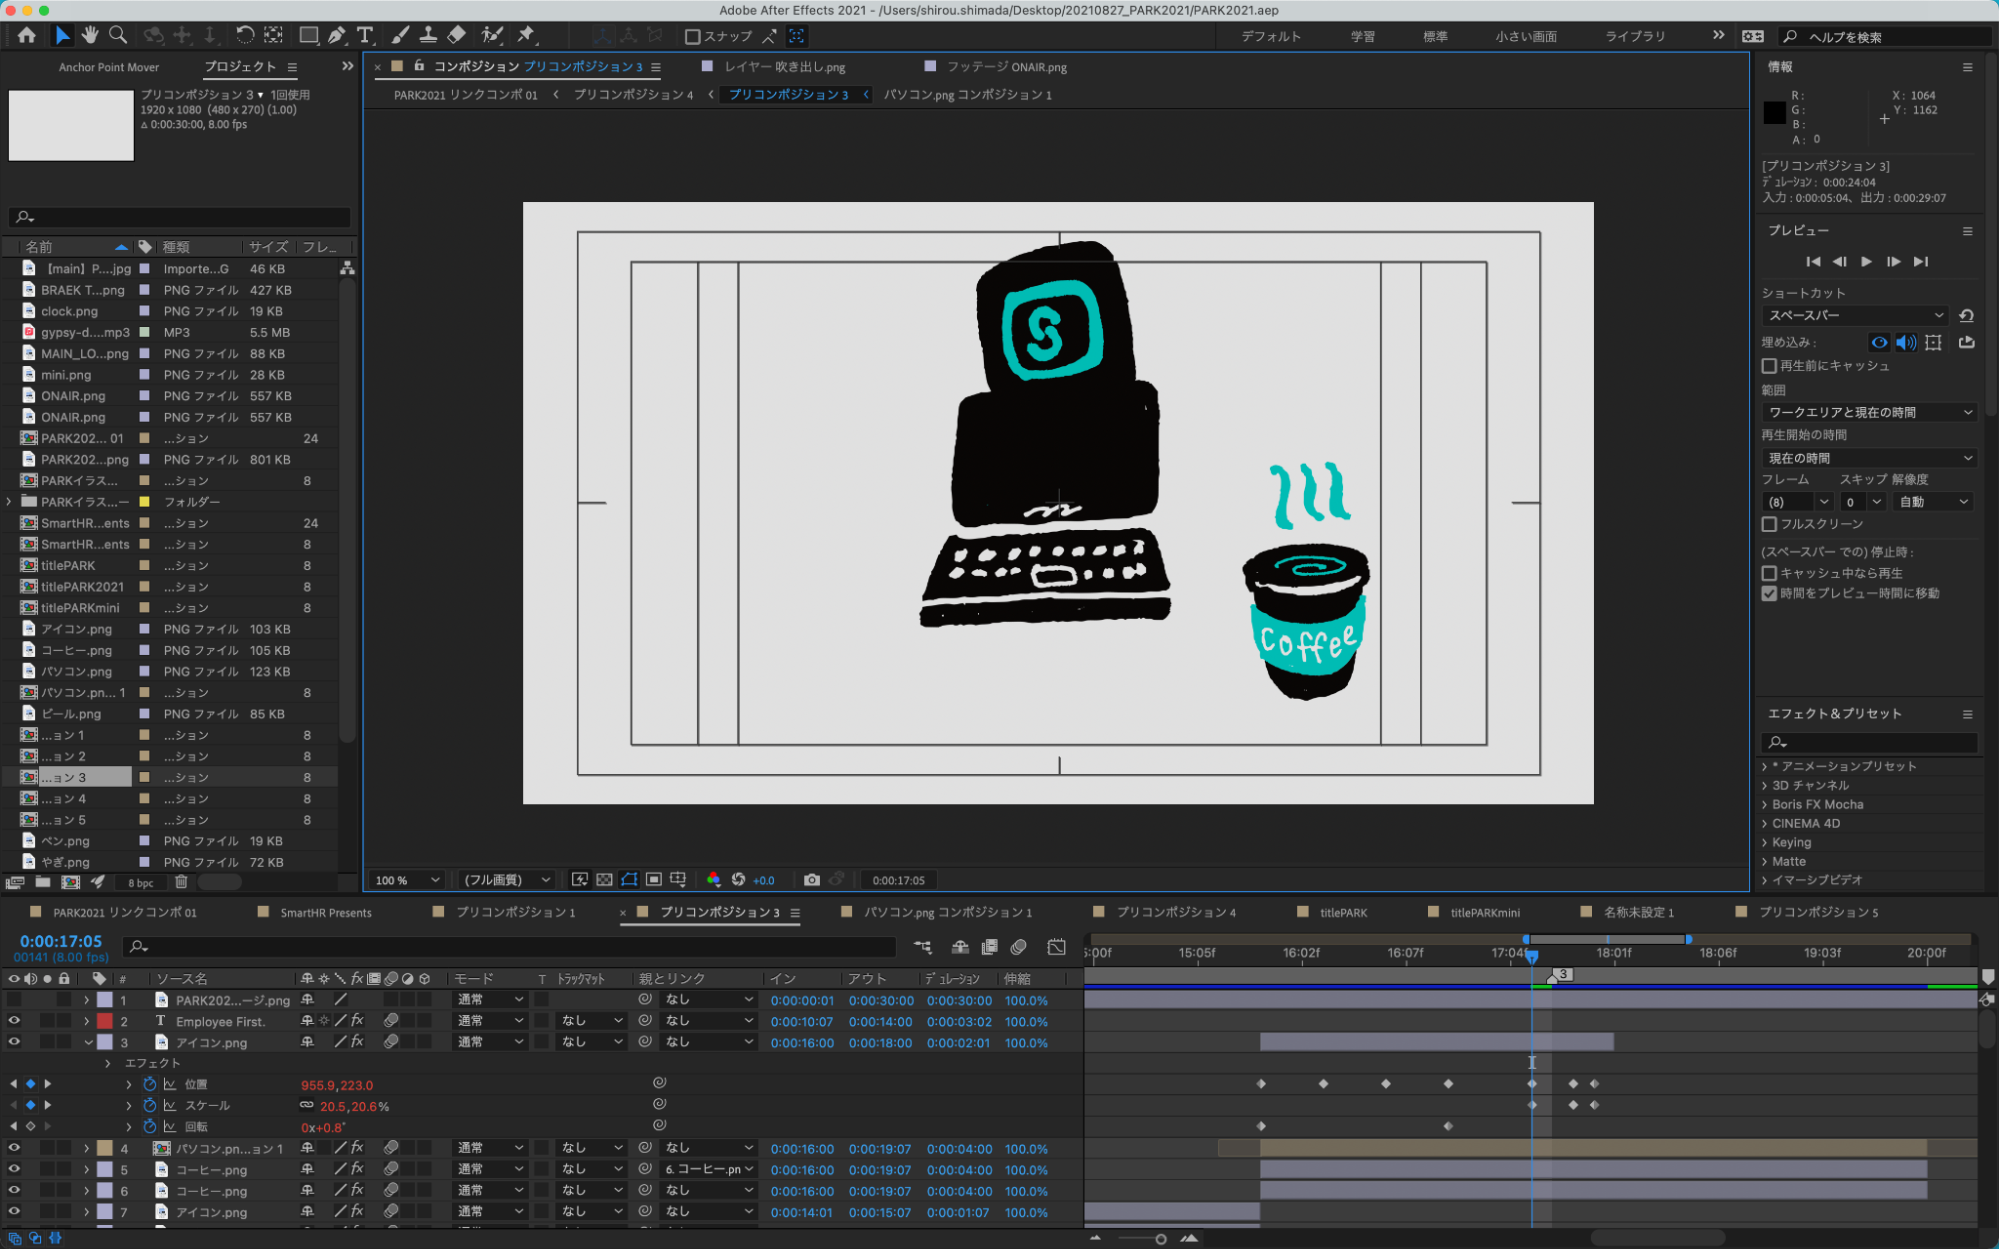 動画の制作画面のキャプチャ。キービジュアルのイラストが中央に表示されている。